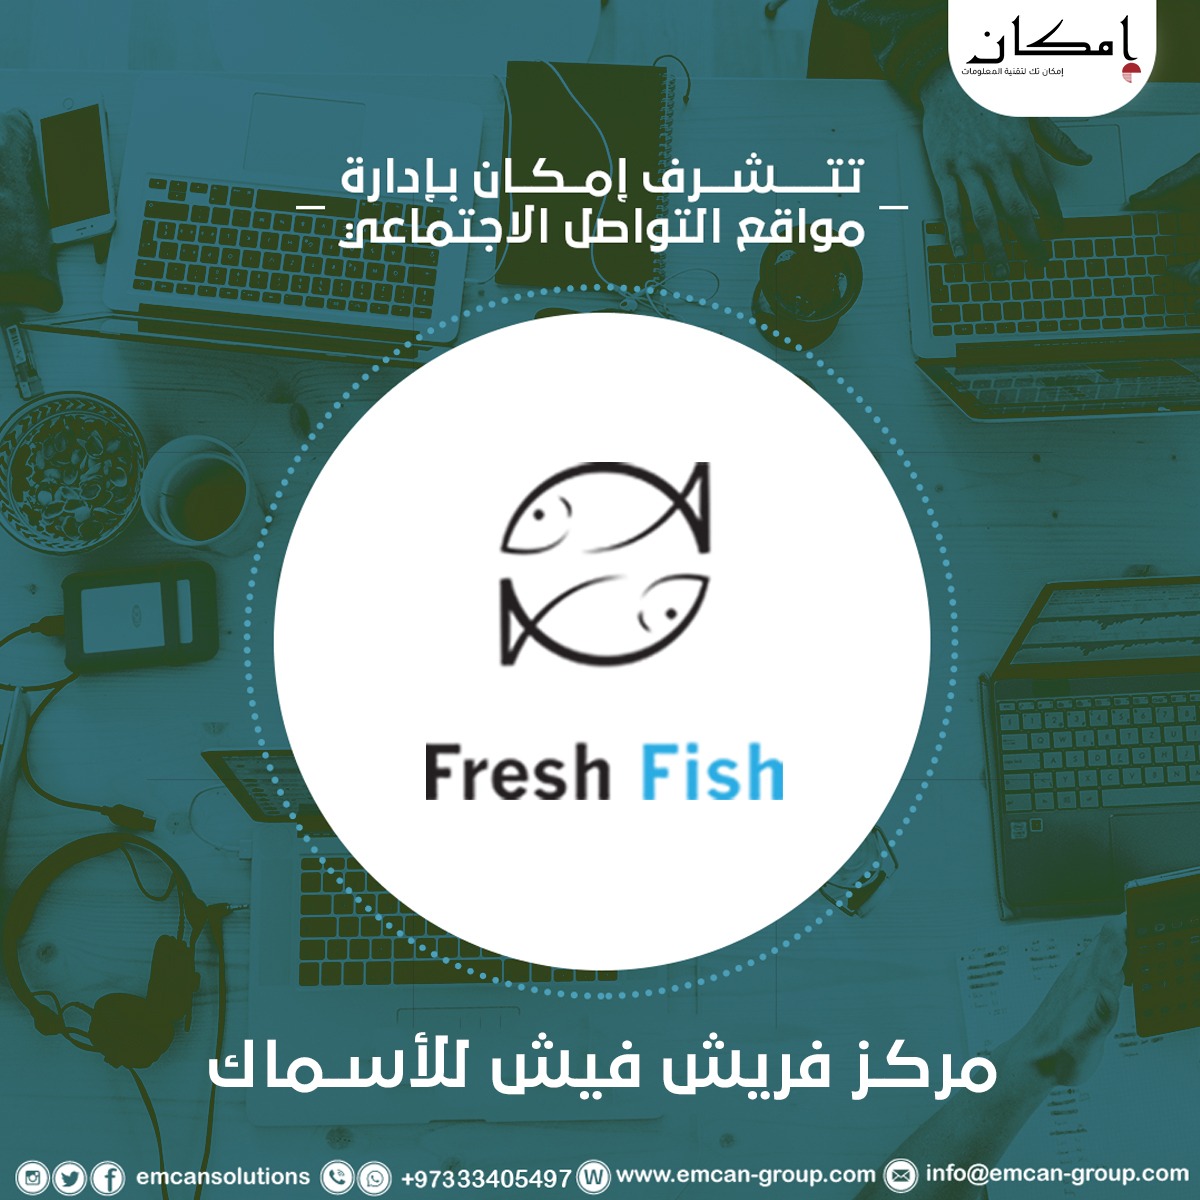 Social media management for Fresh Fish Center